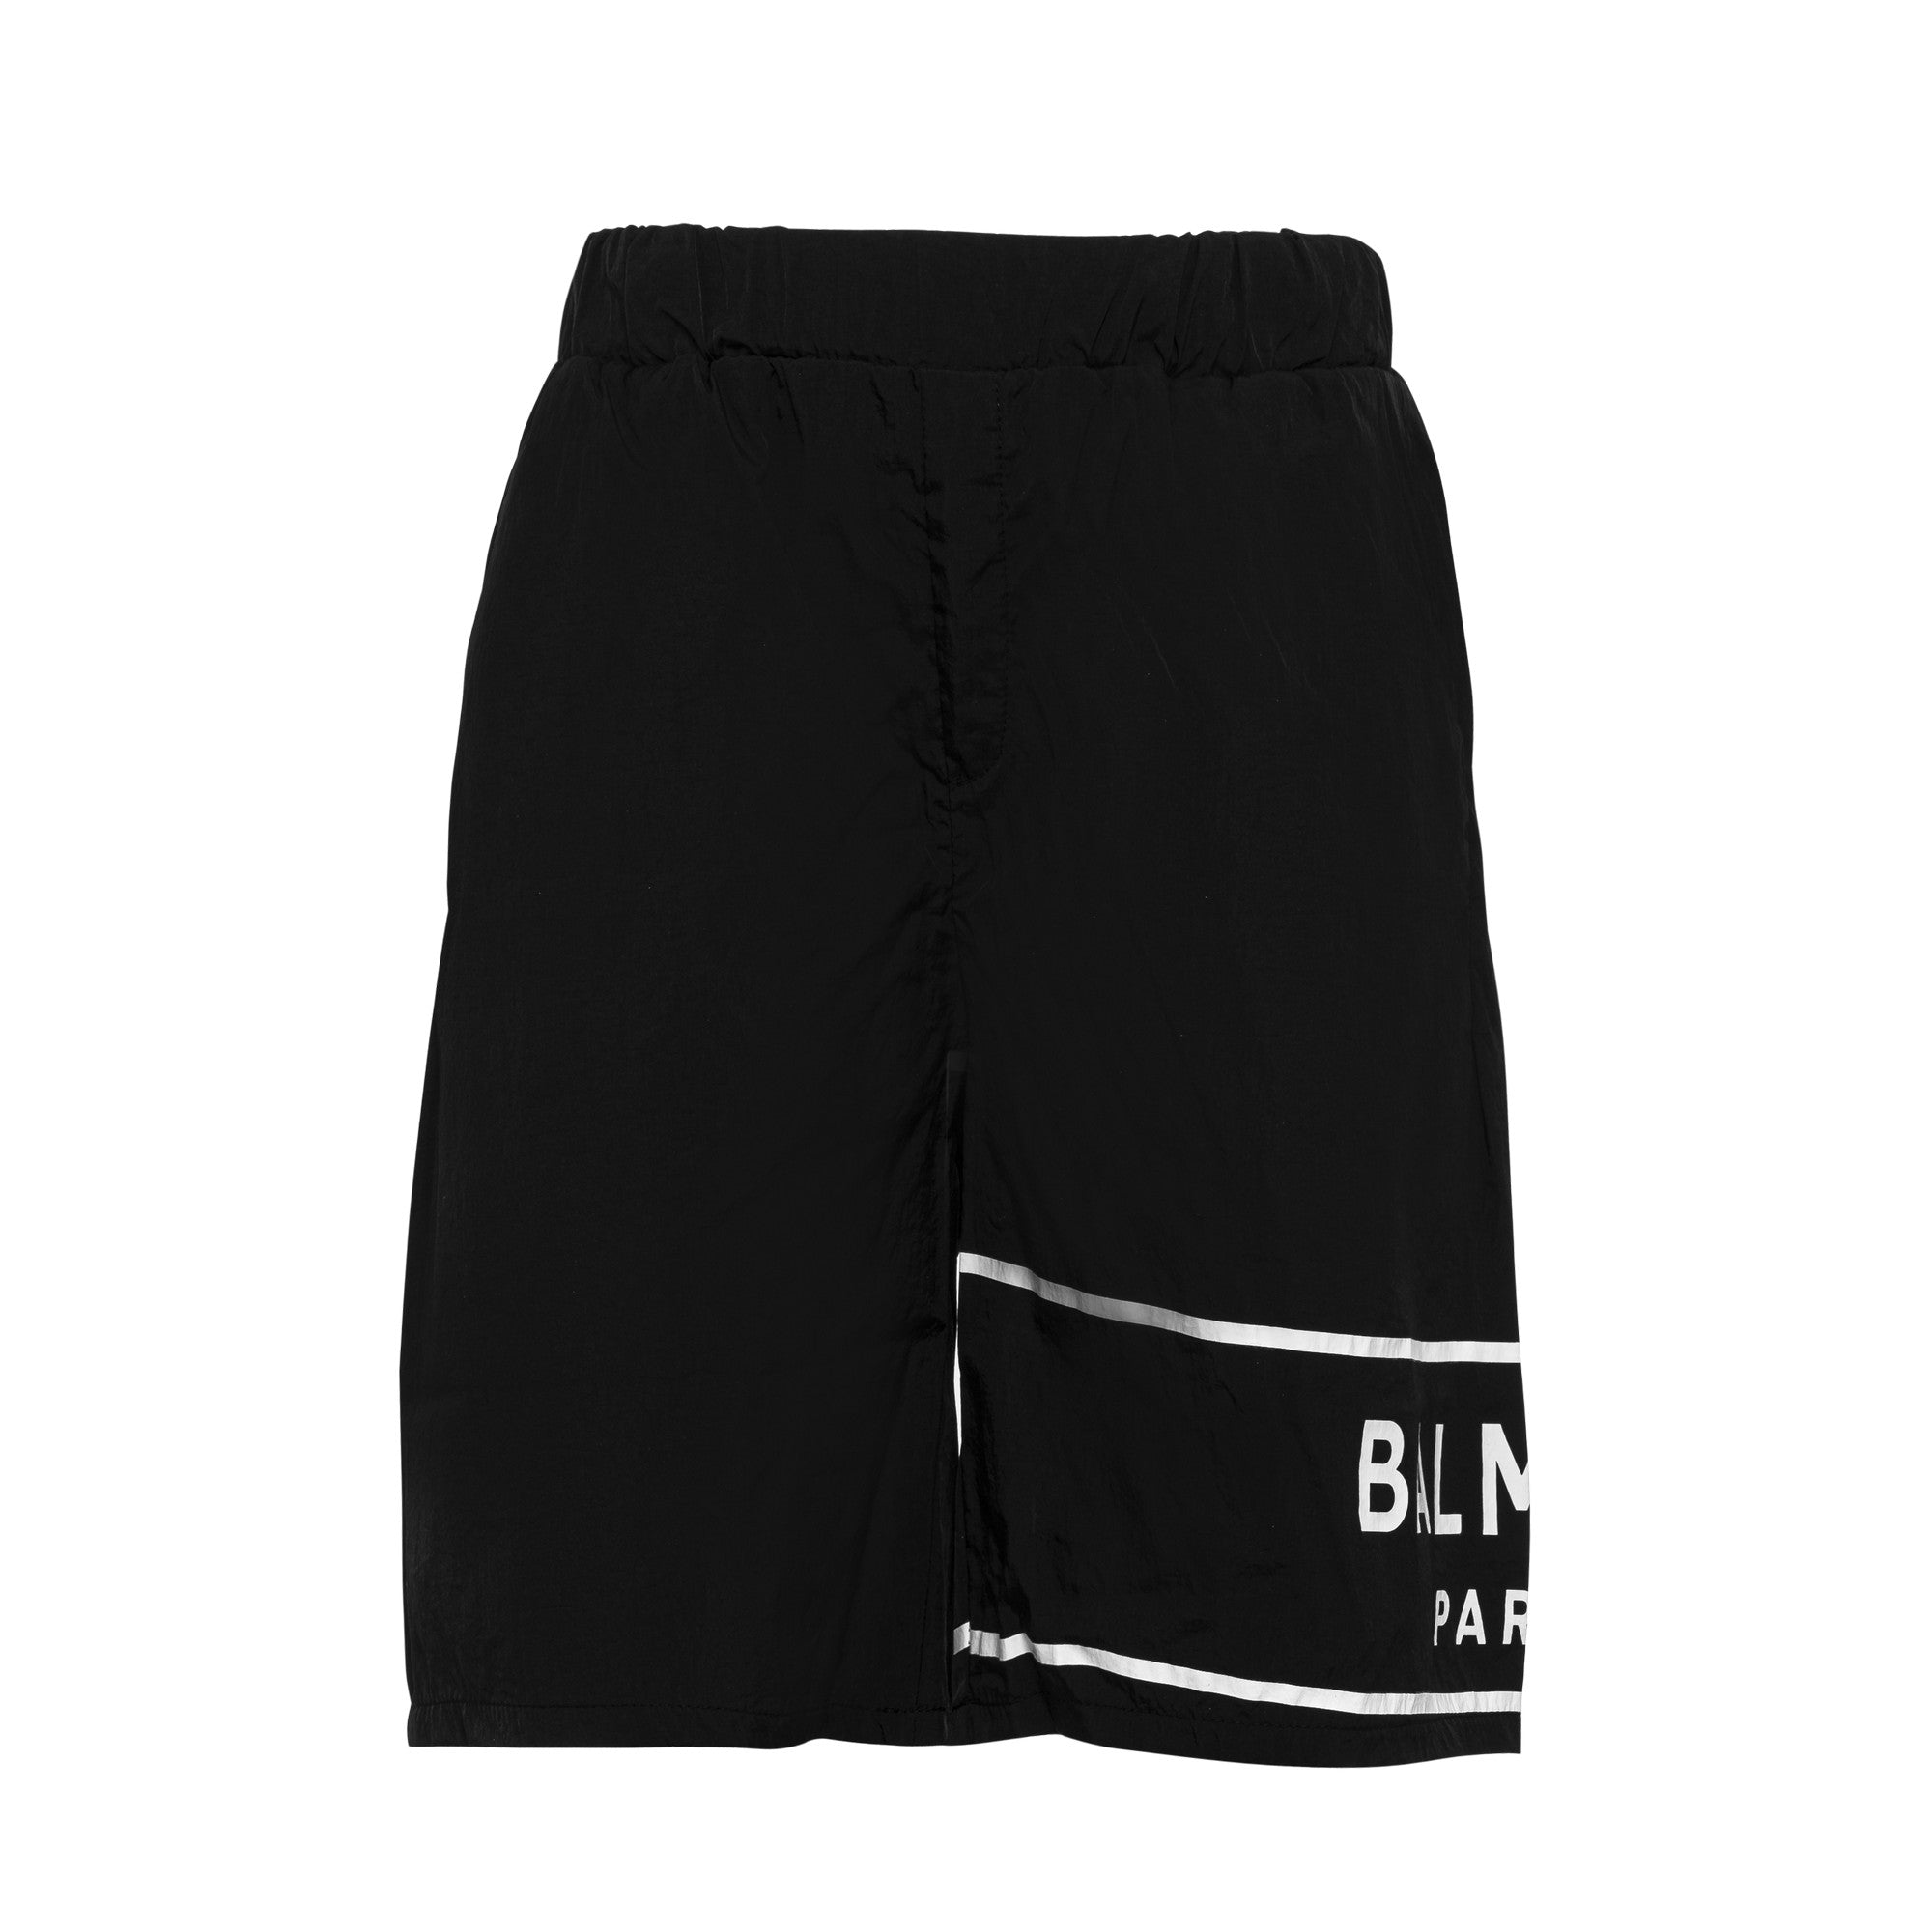 Balmain Black Swim Shorts